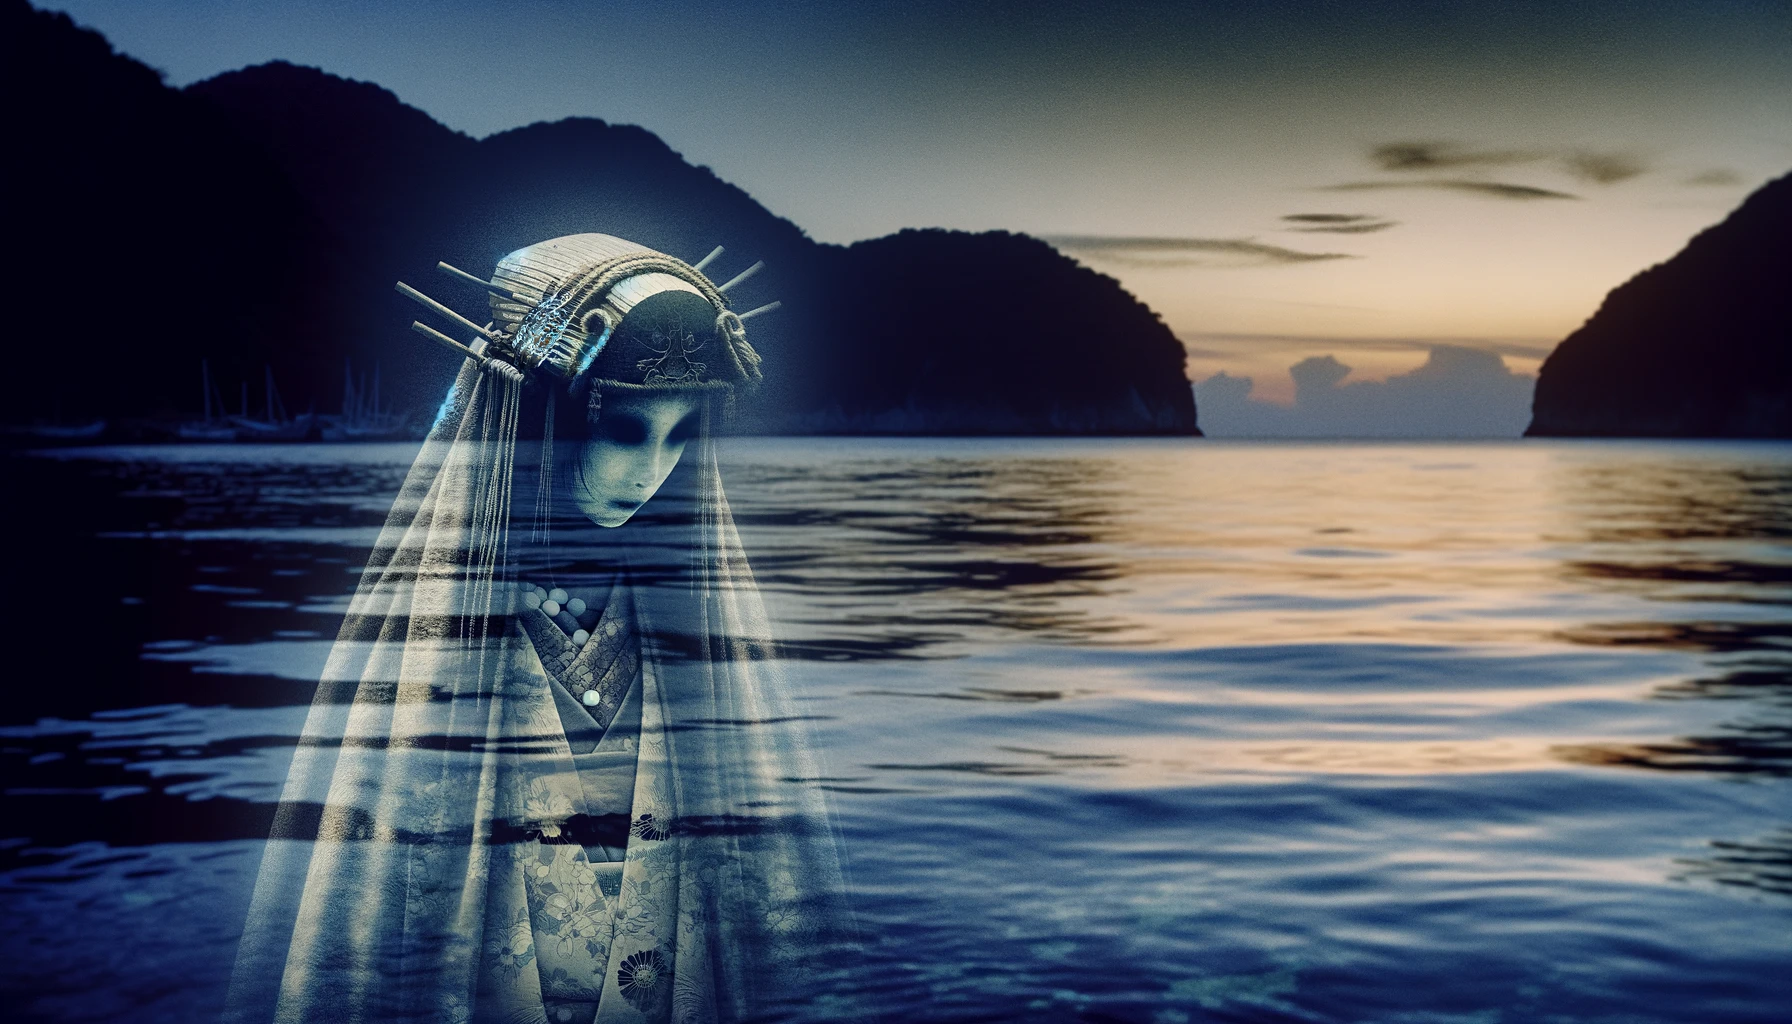 "夕暮れ時の垂水地方の海上に浮かぶ、伝統的な海女の装いをした幽霊の姿。穏やかな海面に柔らかな日の光が反射し、幽玄とした雰囲気を演出している。"